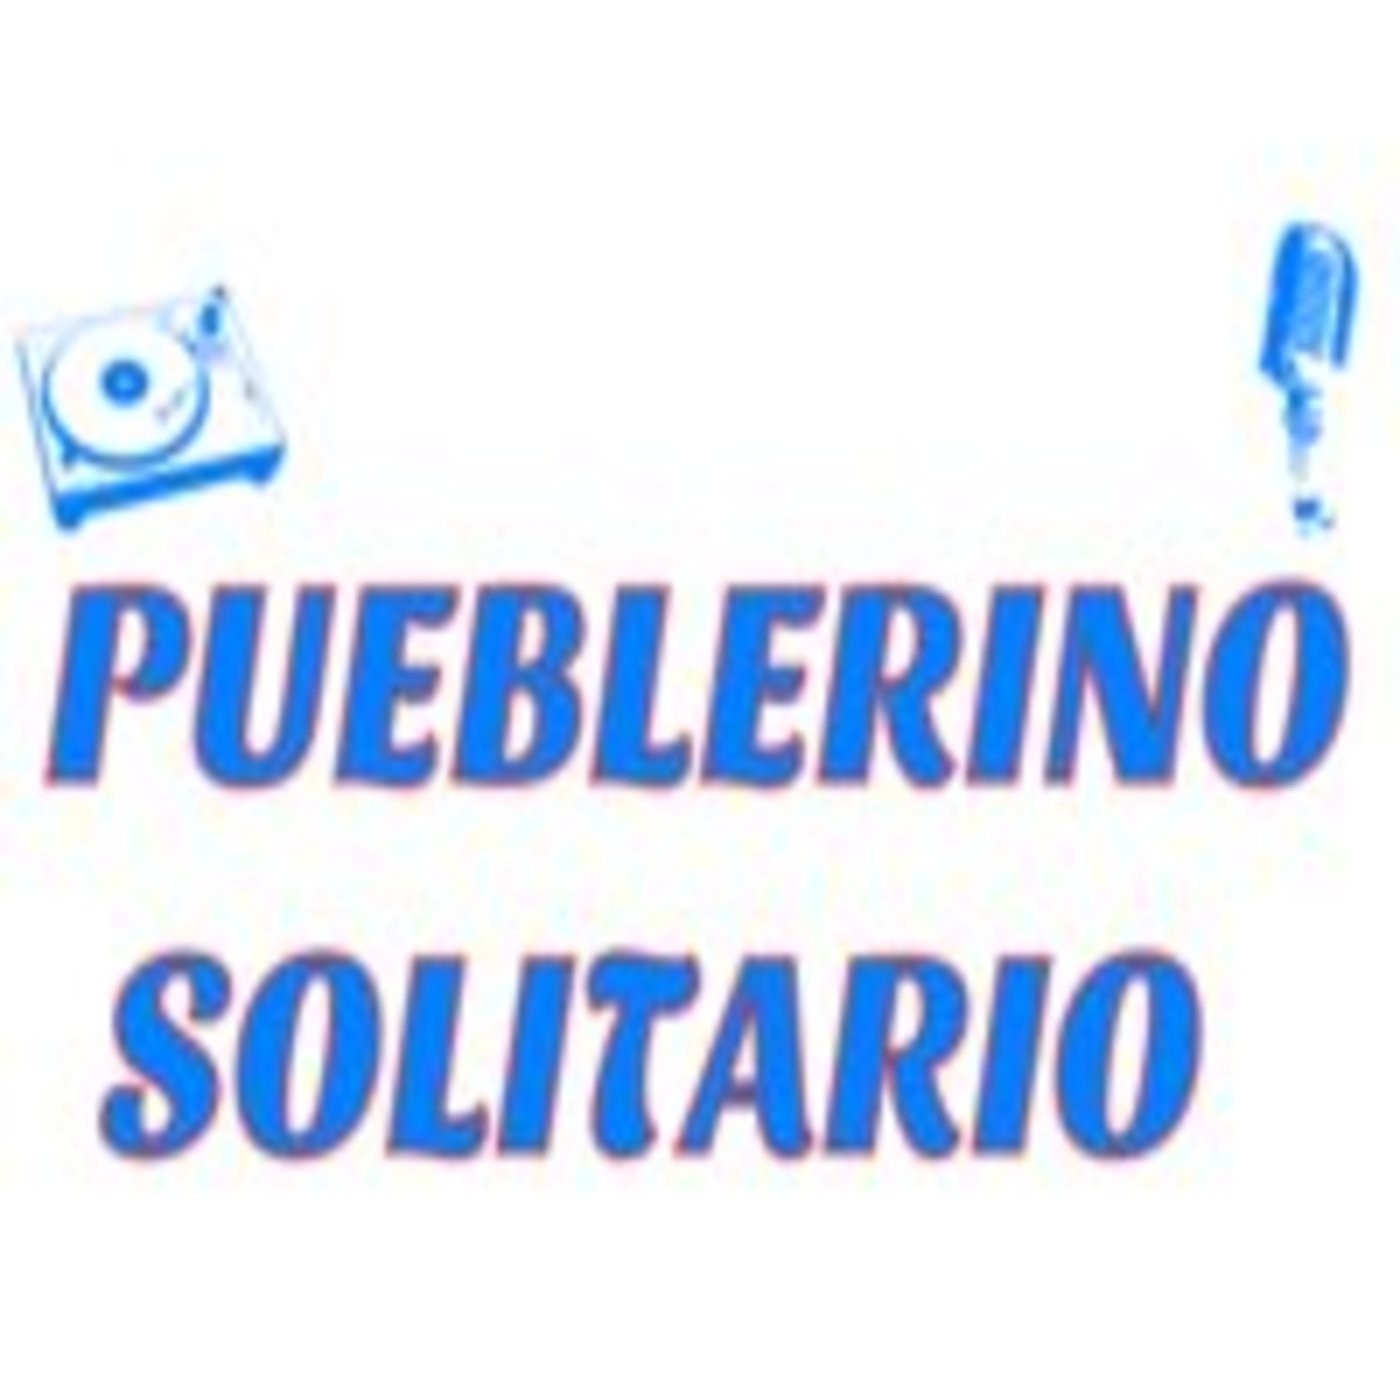 Podcast de Pueblerino Solitario